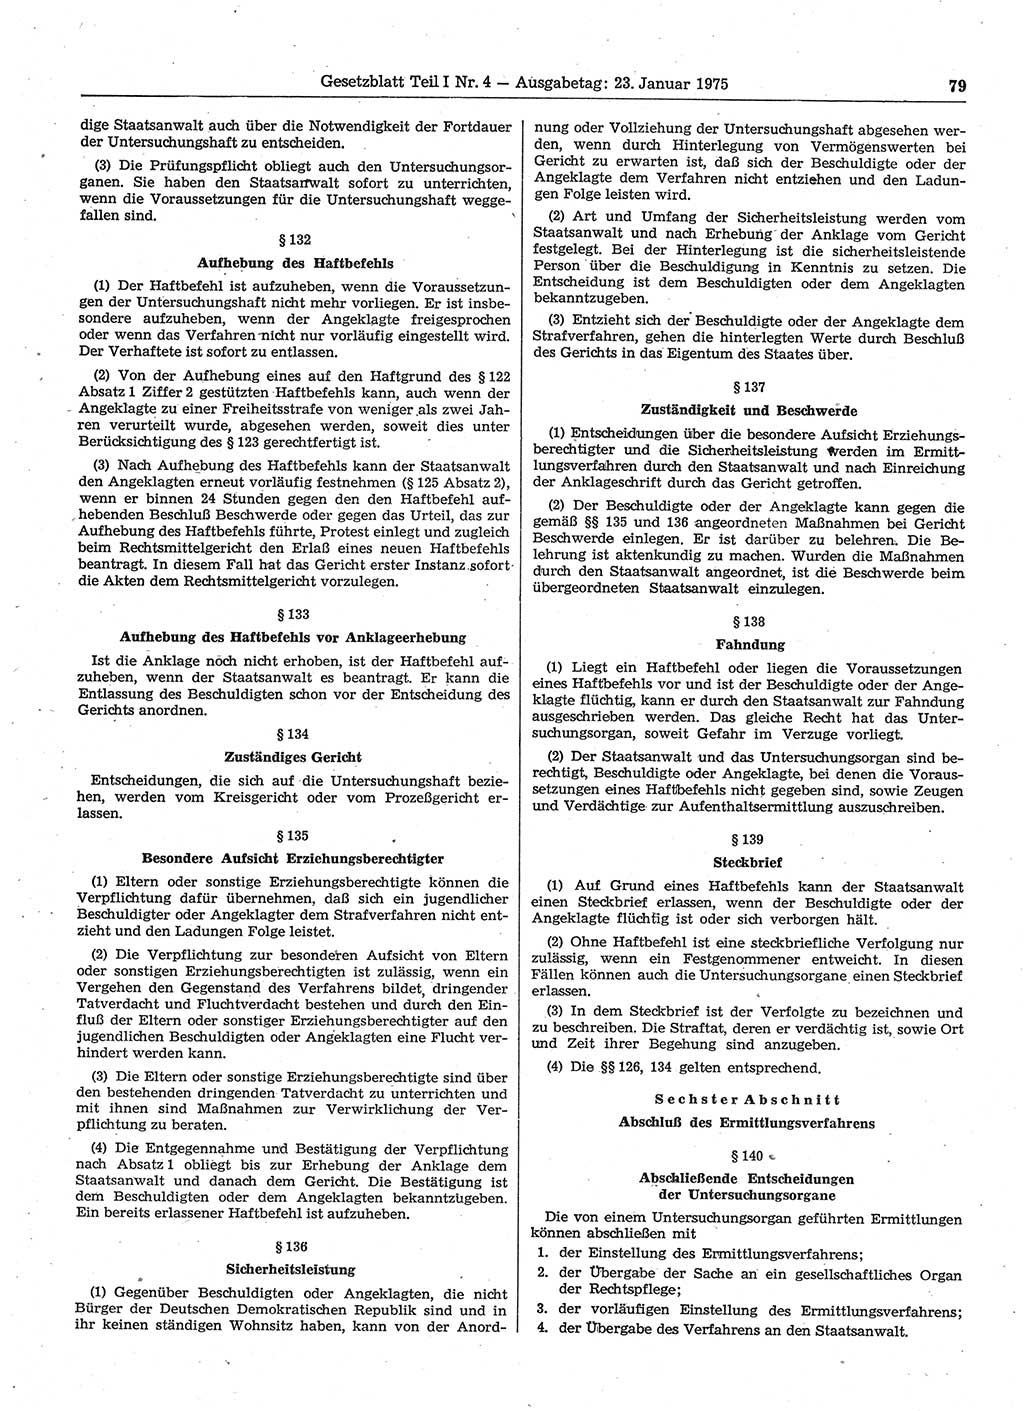 Gesetzblatt (GBl.) der Deutschen Demokratischen Republik (DDR) Teil Ⅰ 1975, Seite 79 (GBl. DDR Ⅰ 1975, S. 79)